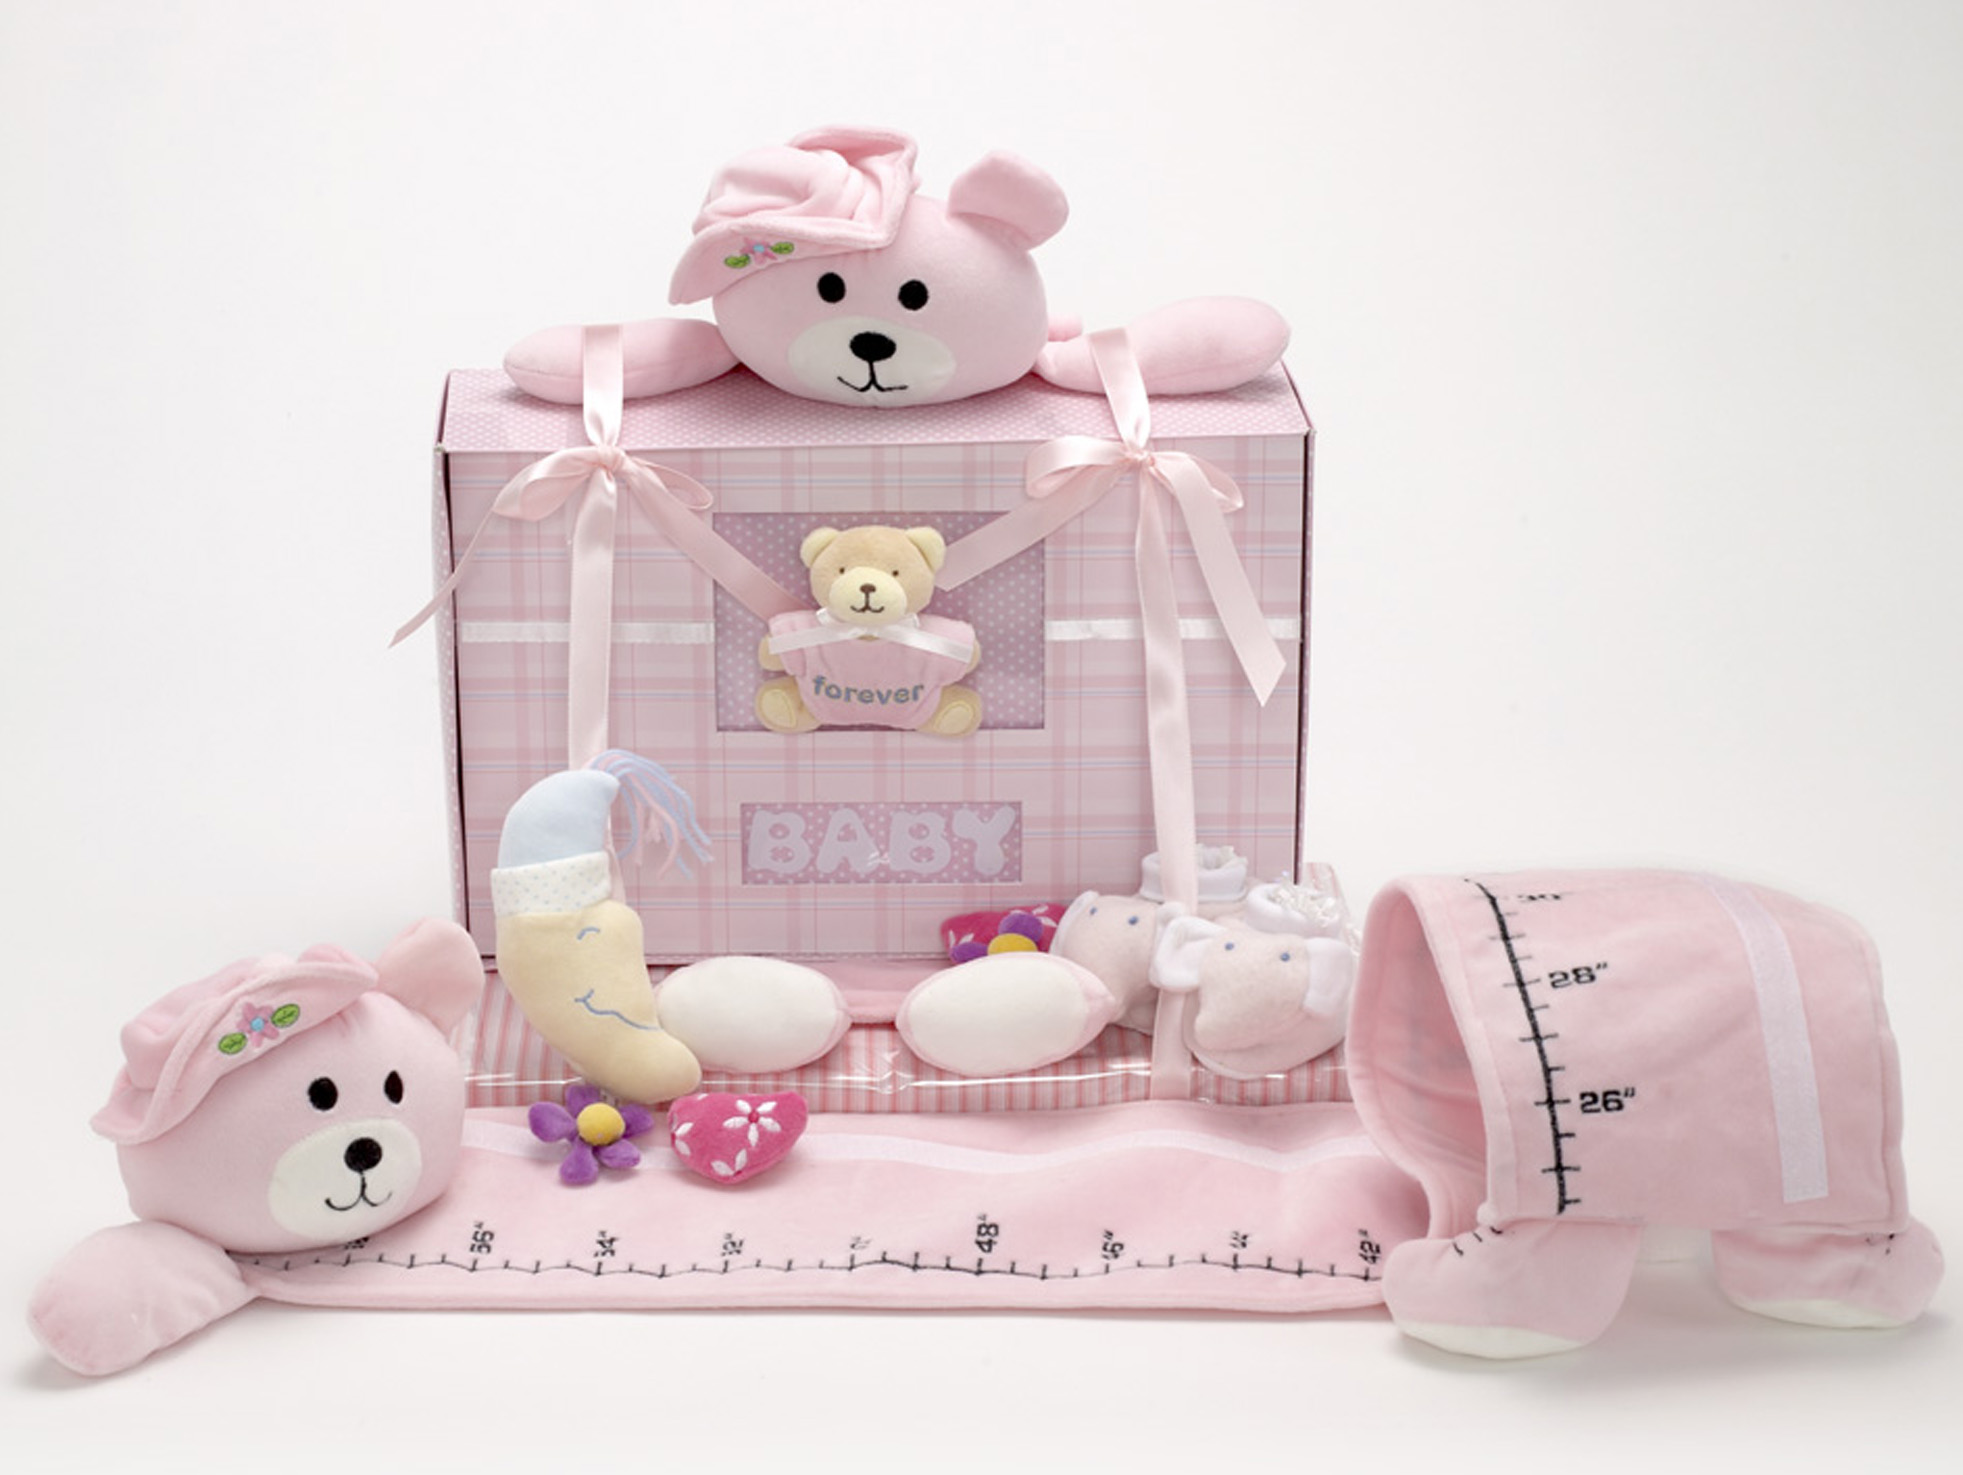 Baby Girl Révélateurs Taille nouveau-né 3 Neuf avec étiquettes 12M- Infant Ensemble Cadeau 